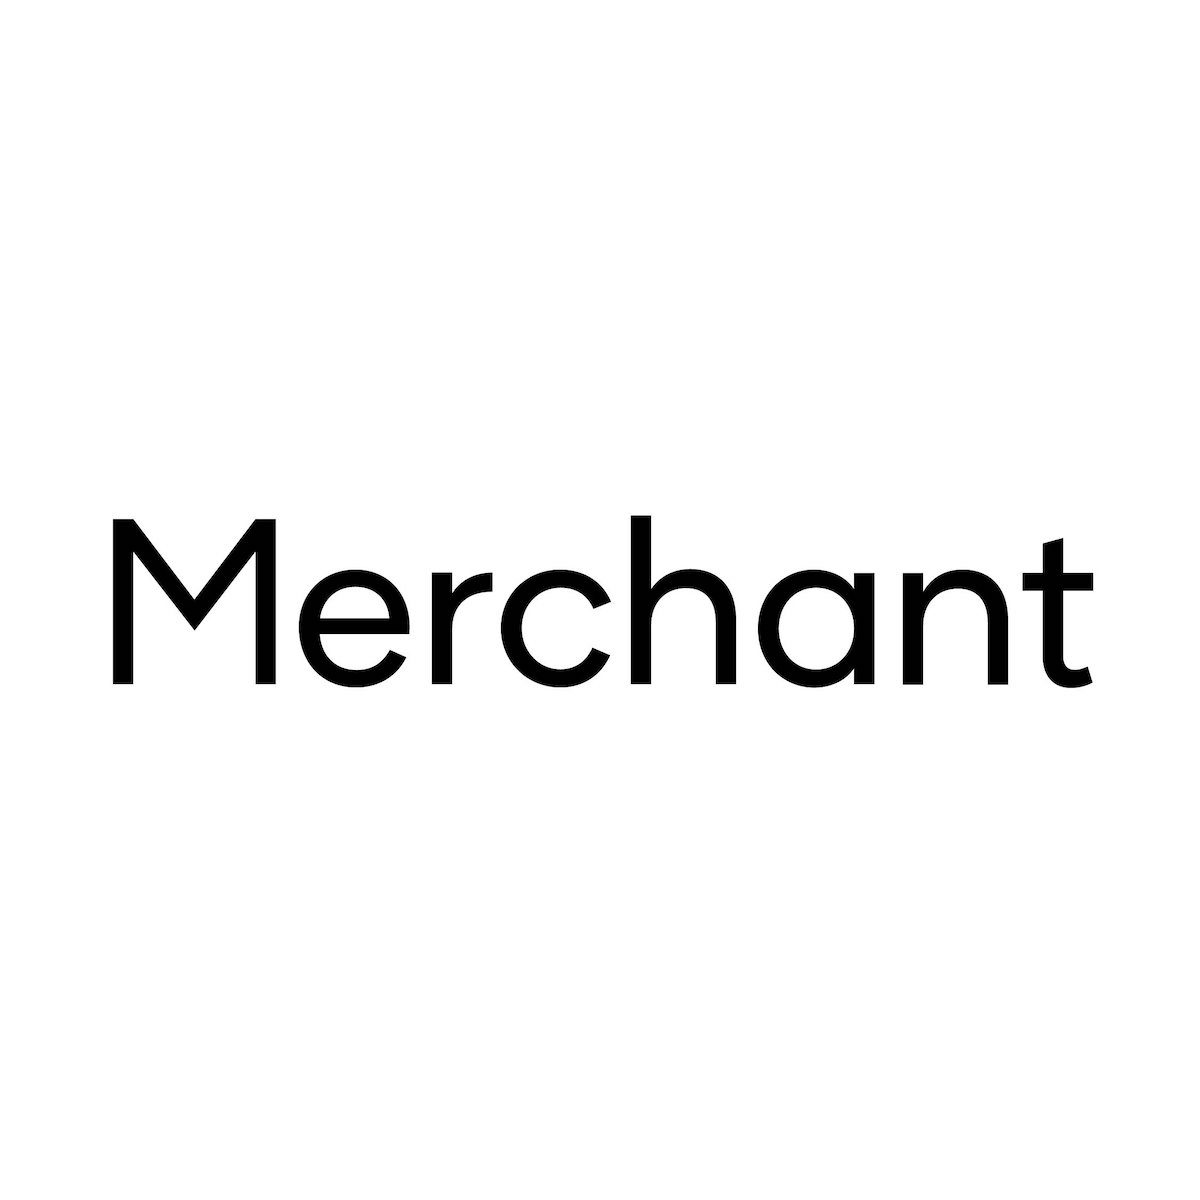 Merchant Typeface 